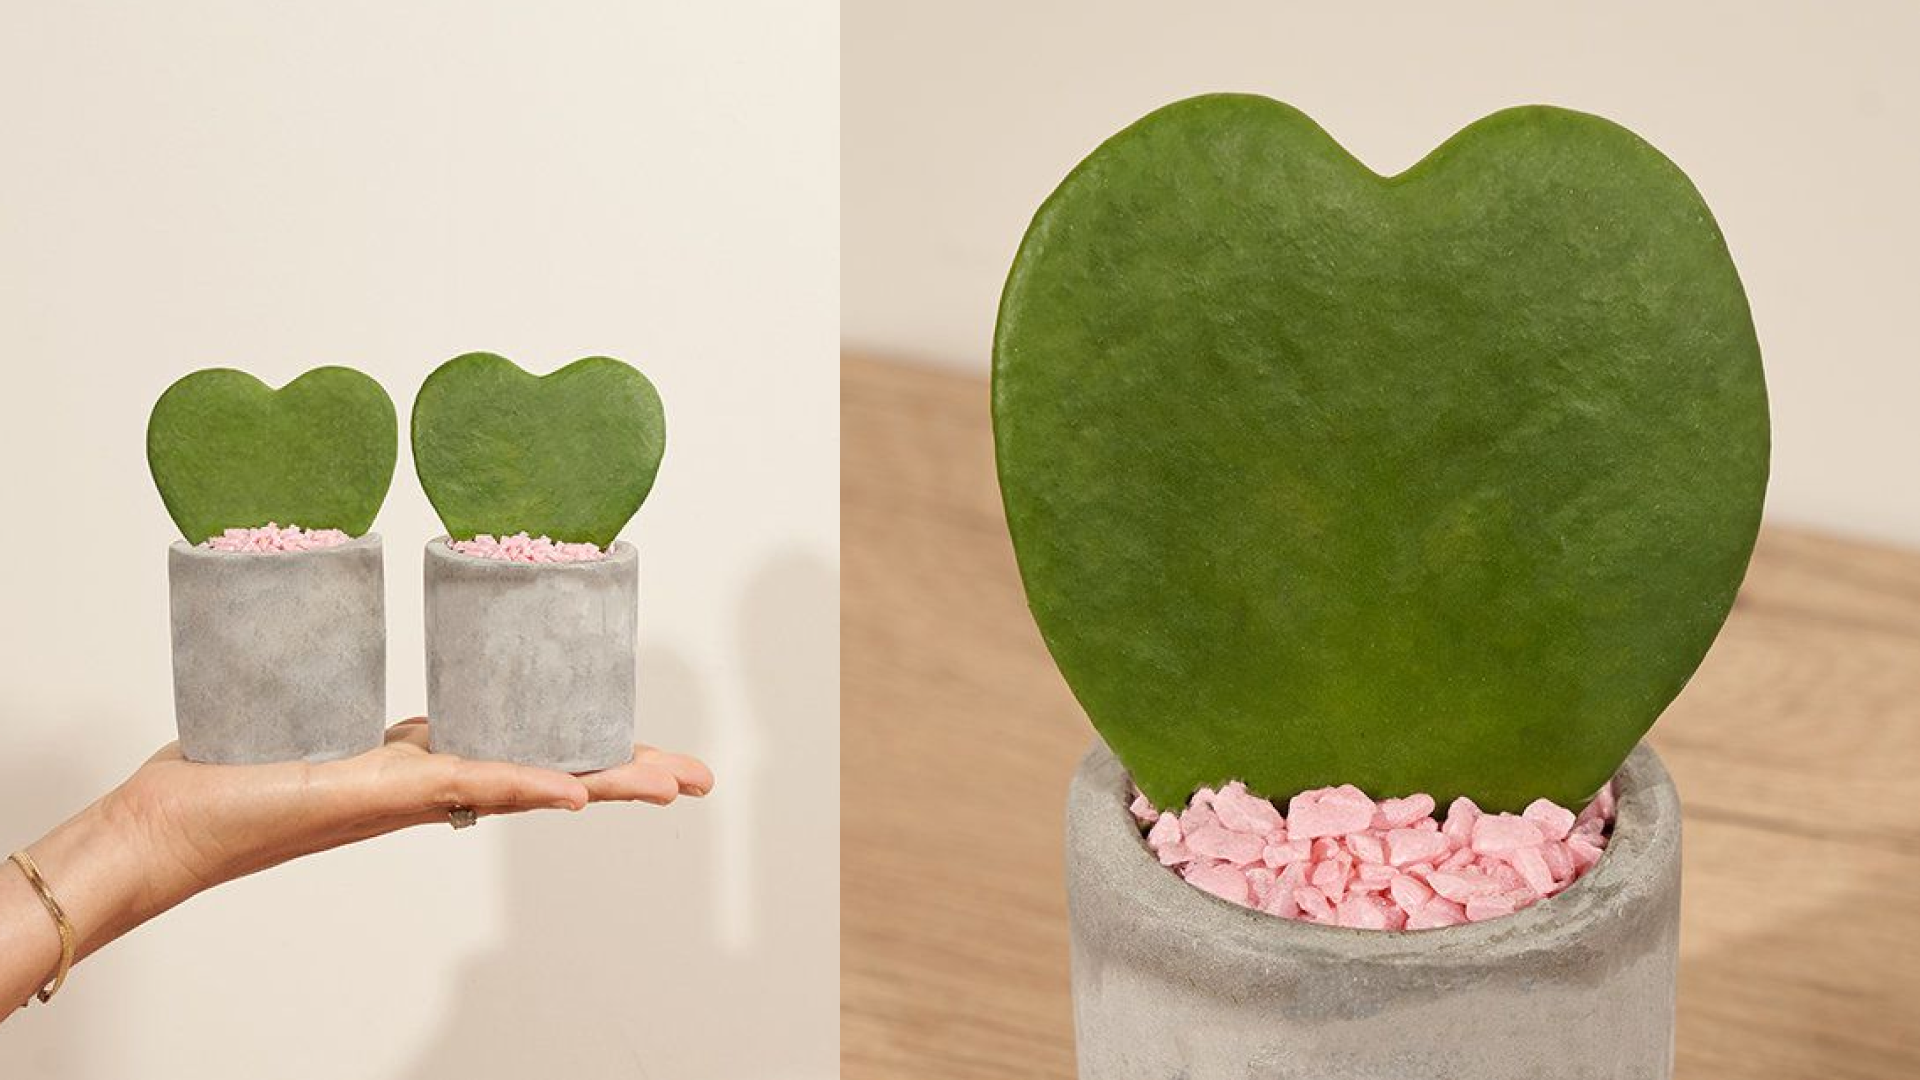 Heart-shaped hoya plants